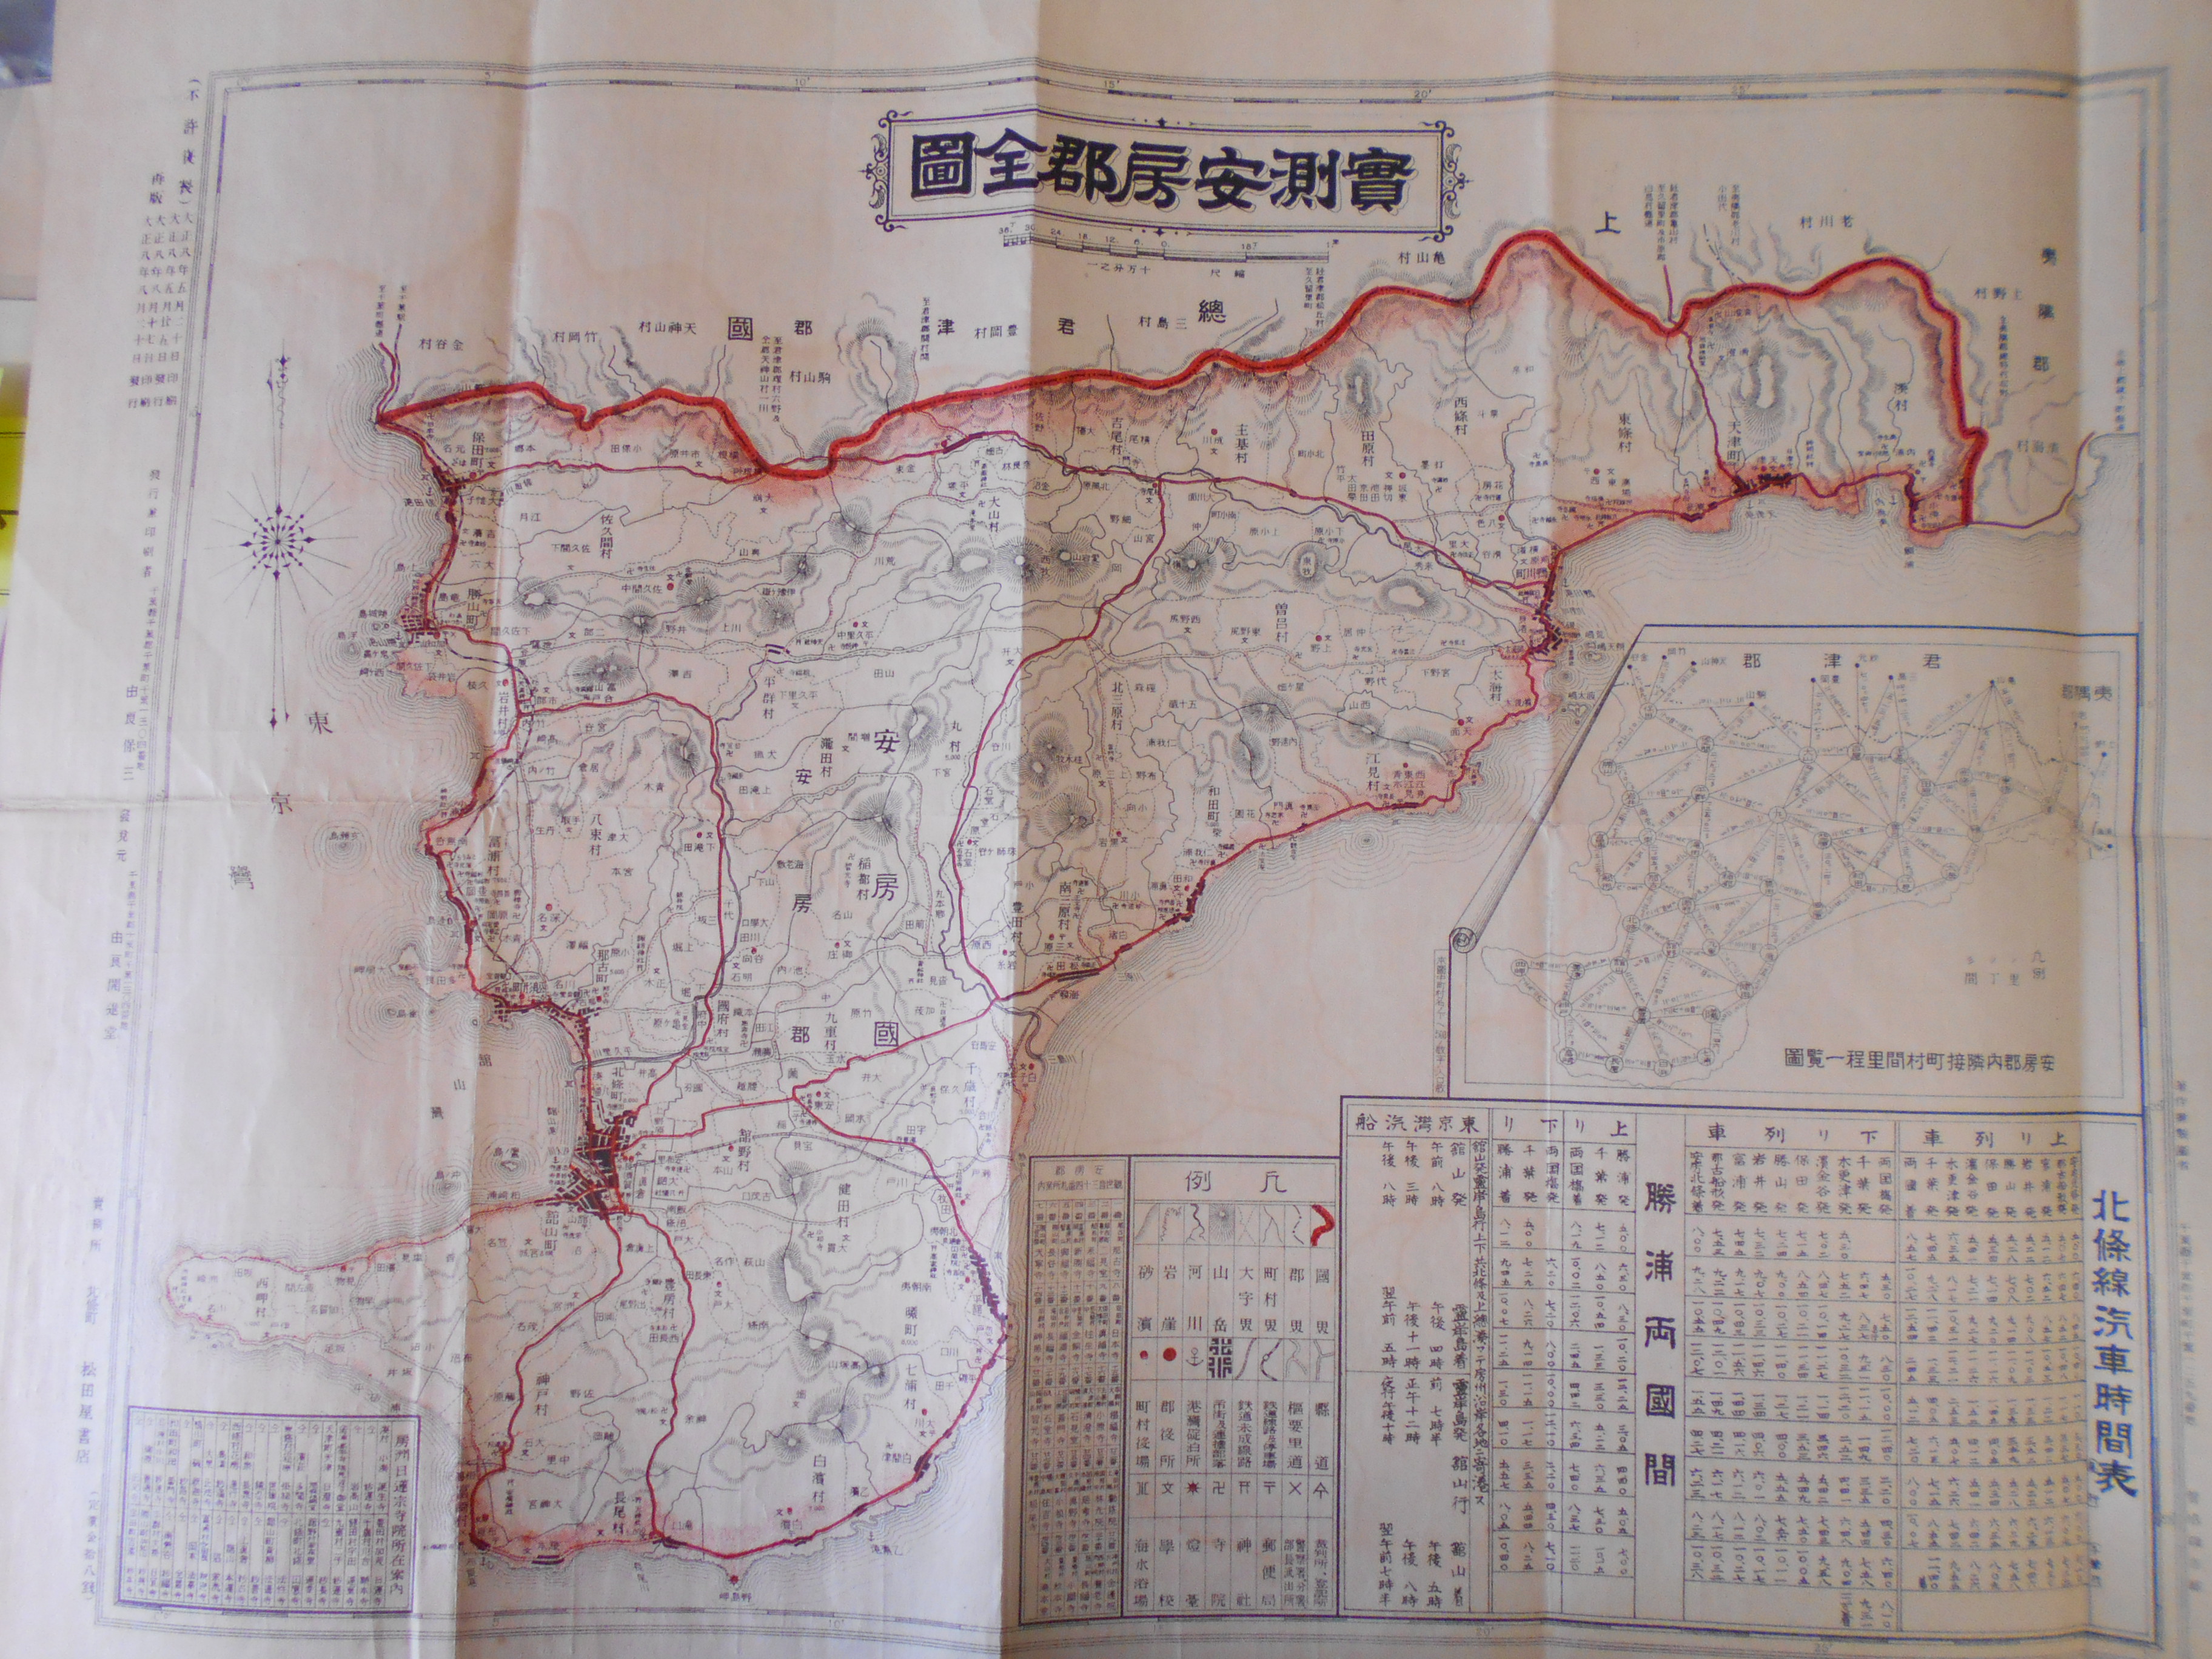 戦前地図【實測安房郡全圖】買取いたしますの画像